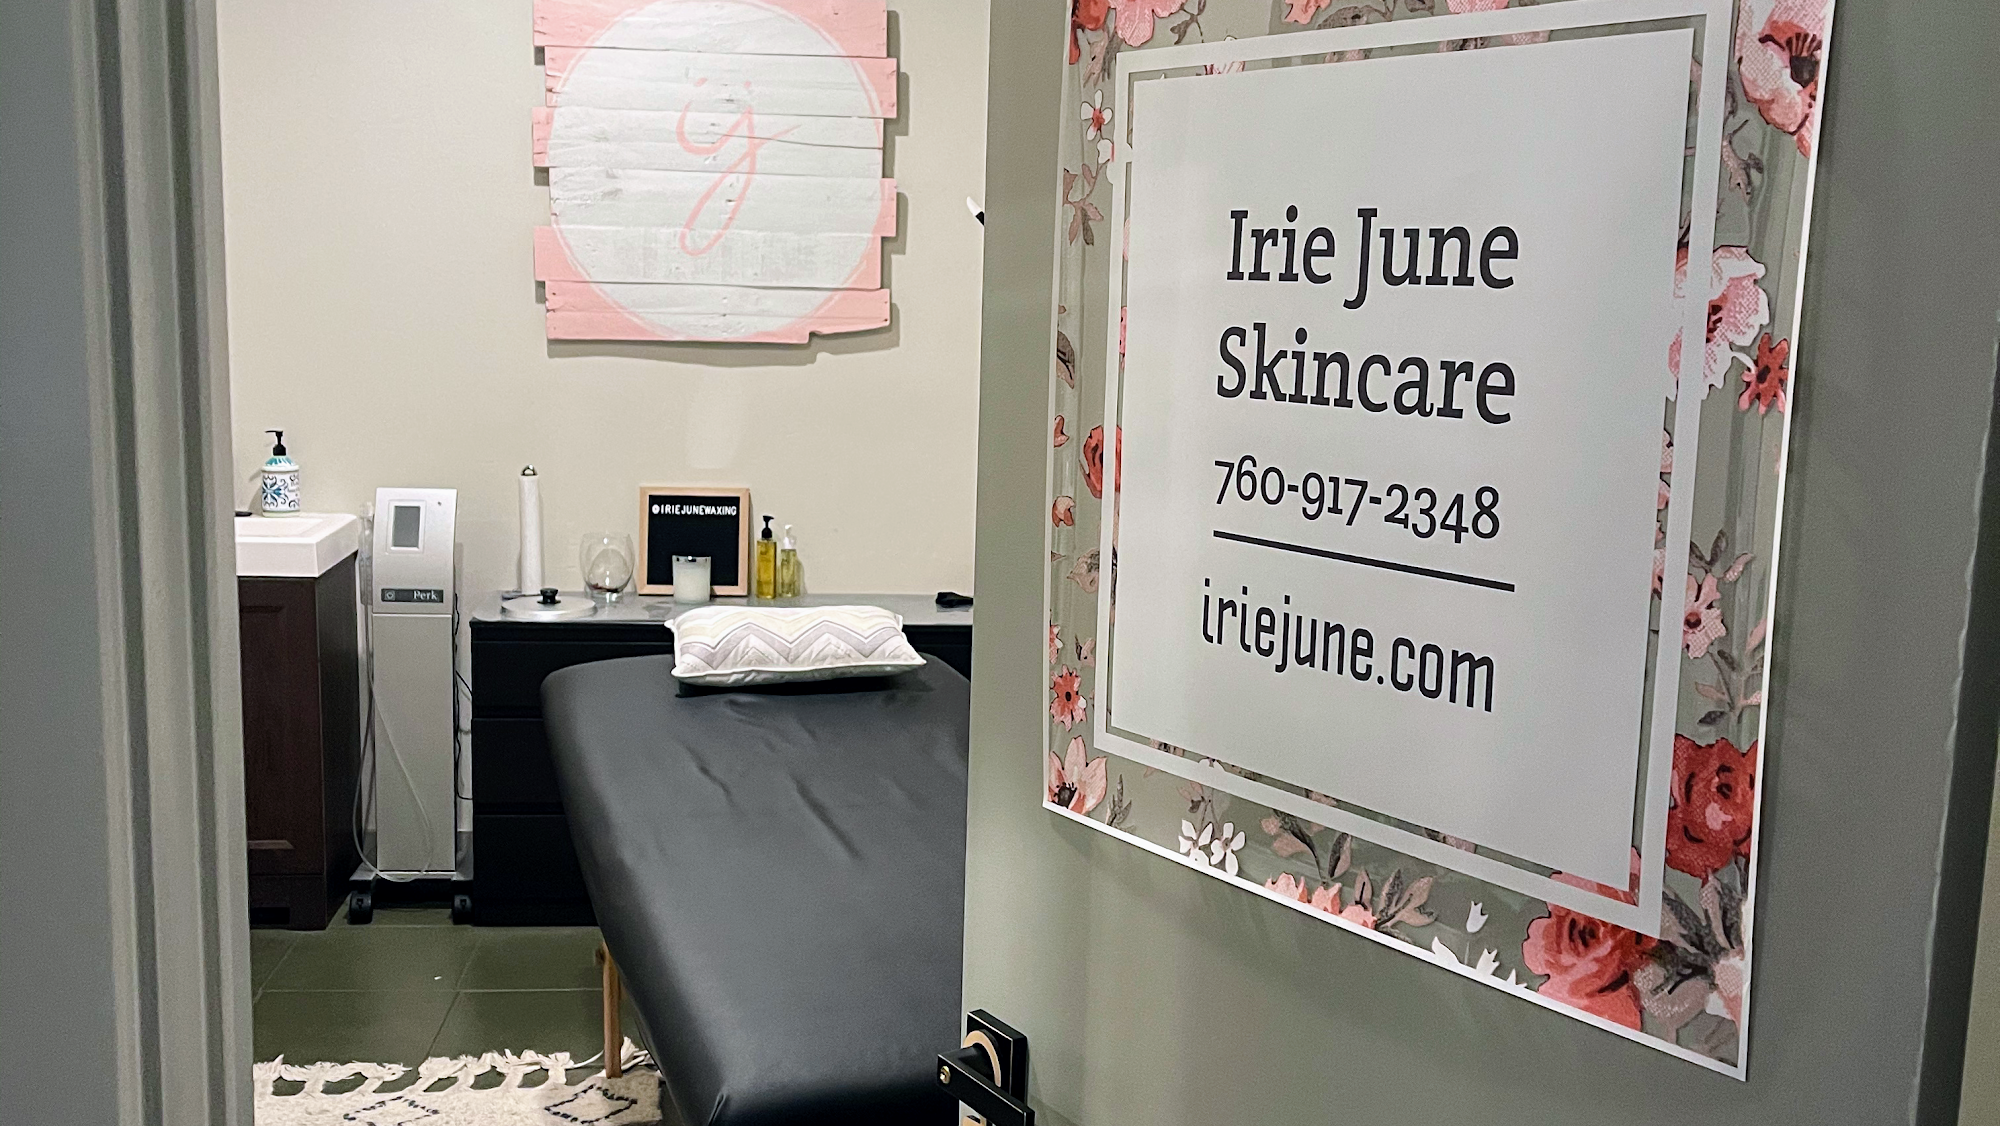 Irie June skincare